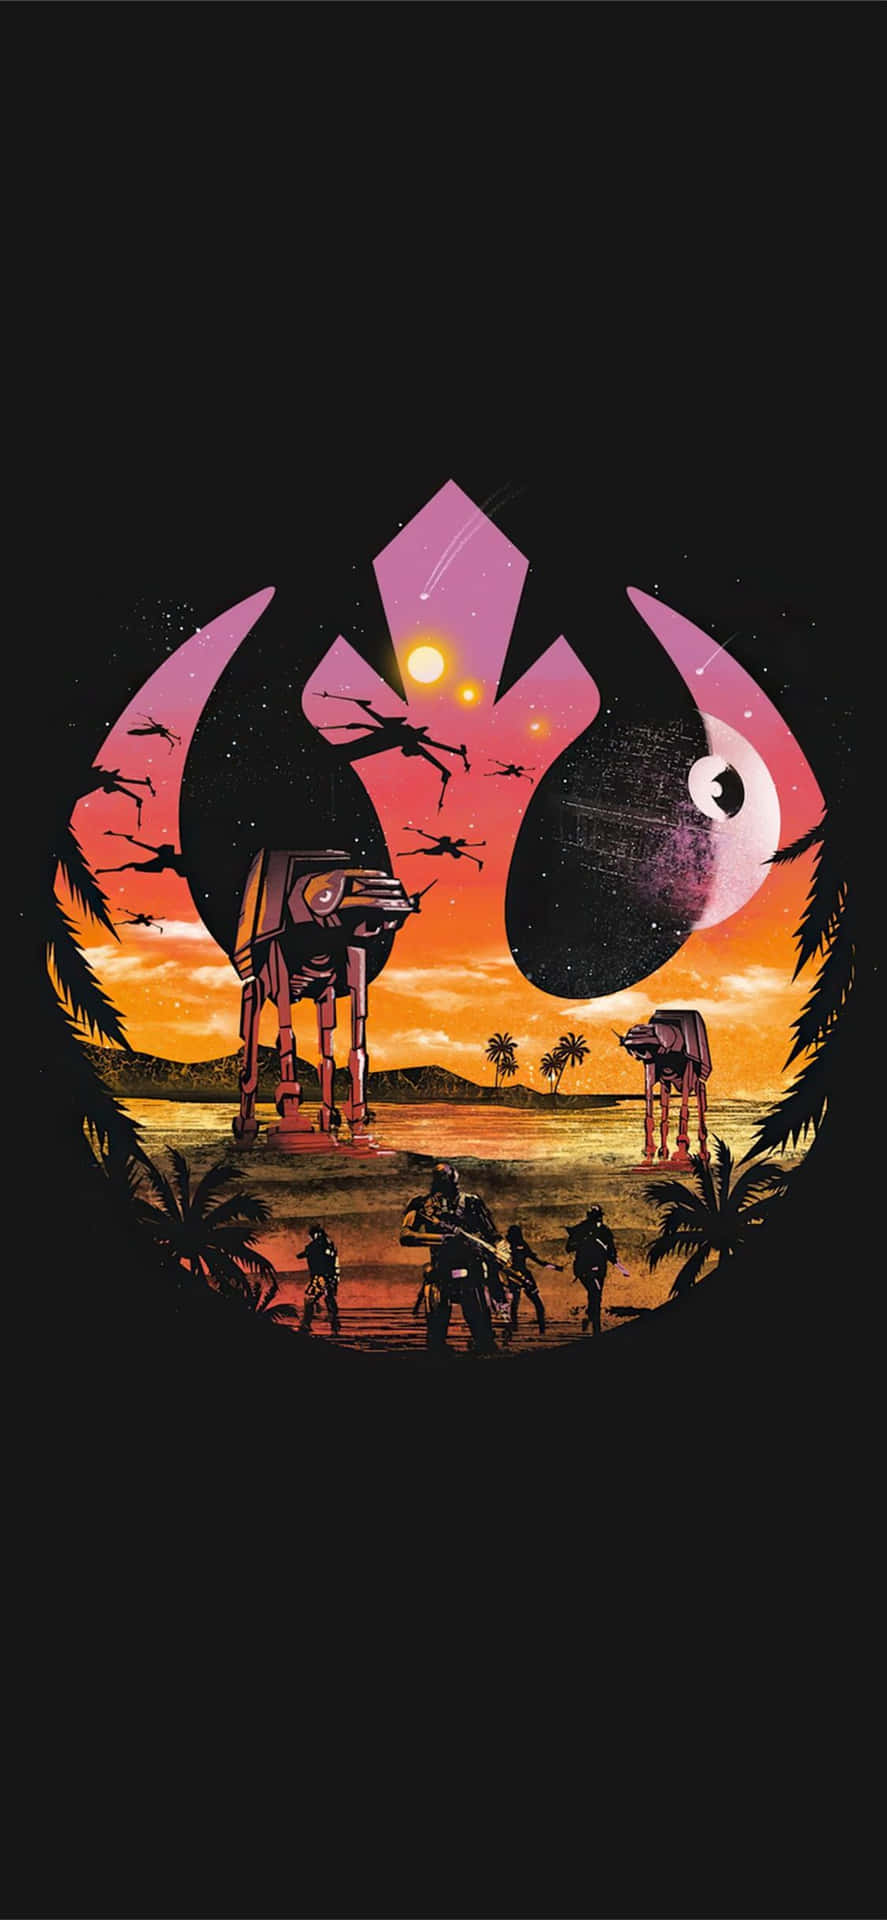 Star Wars Rogue One Shirt Design Wallpaper